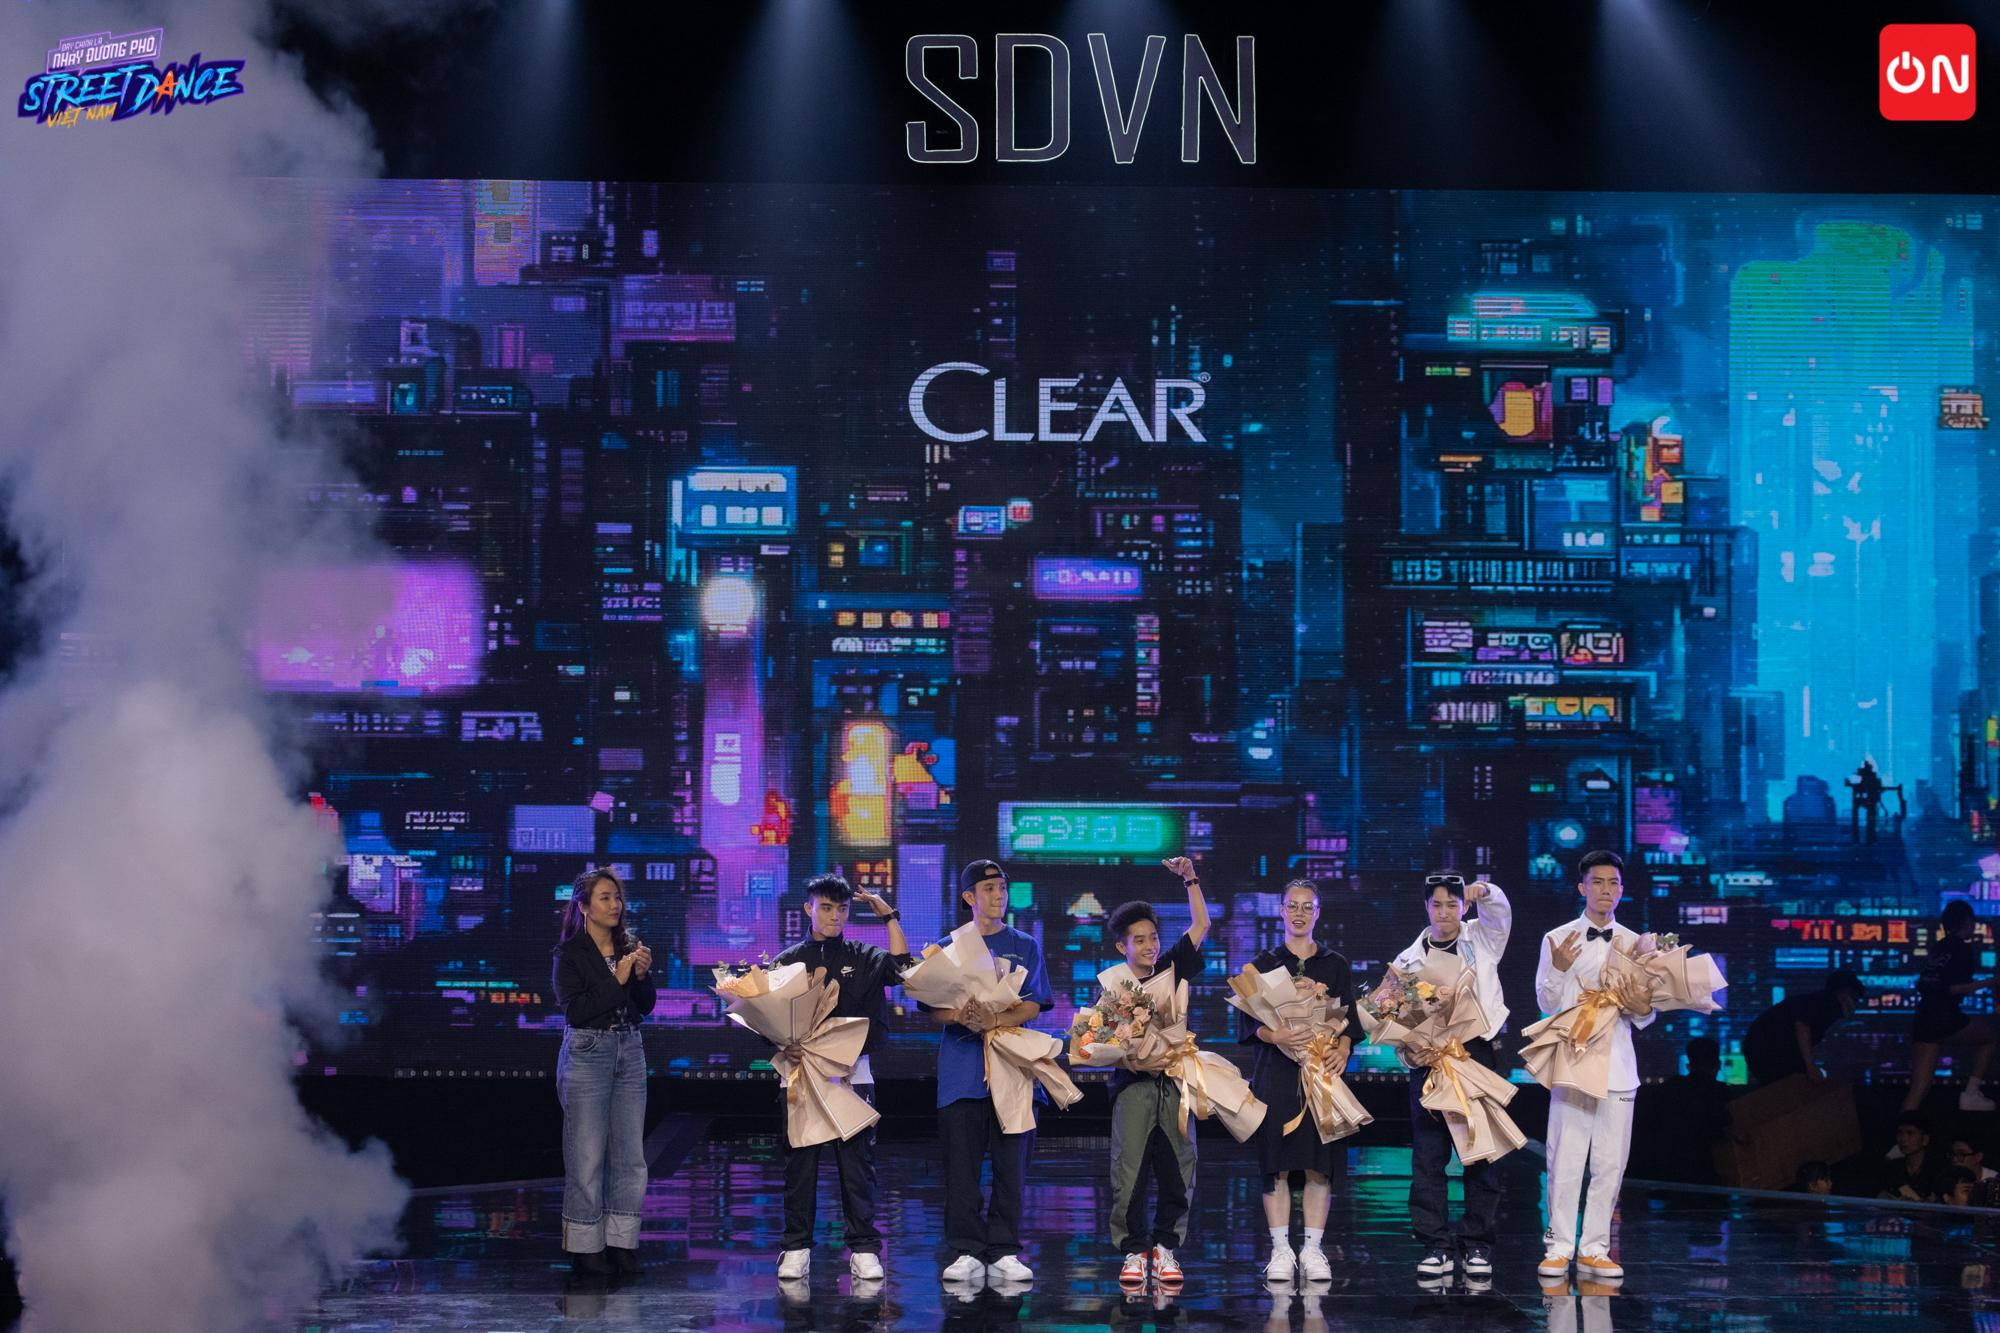 CLEAR thưởng nóng 600 triệu cho các thí sinh ngay đêm chung kết Street Dance Việt Nam, lan tỏa thông điệp “Đầu Lạnh Tim Nóng” bằng chuỗi hành động thiết thực - ảnh 3